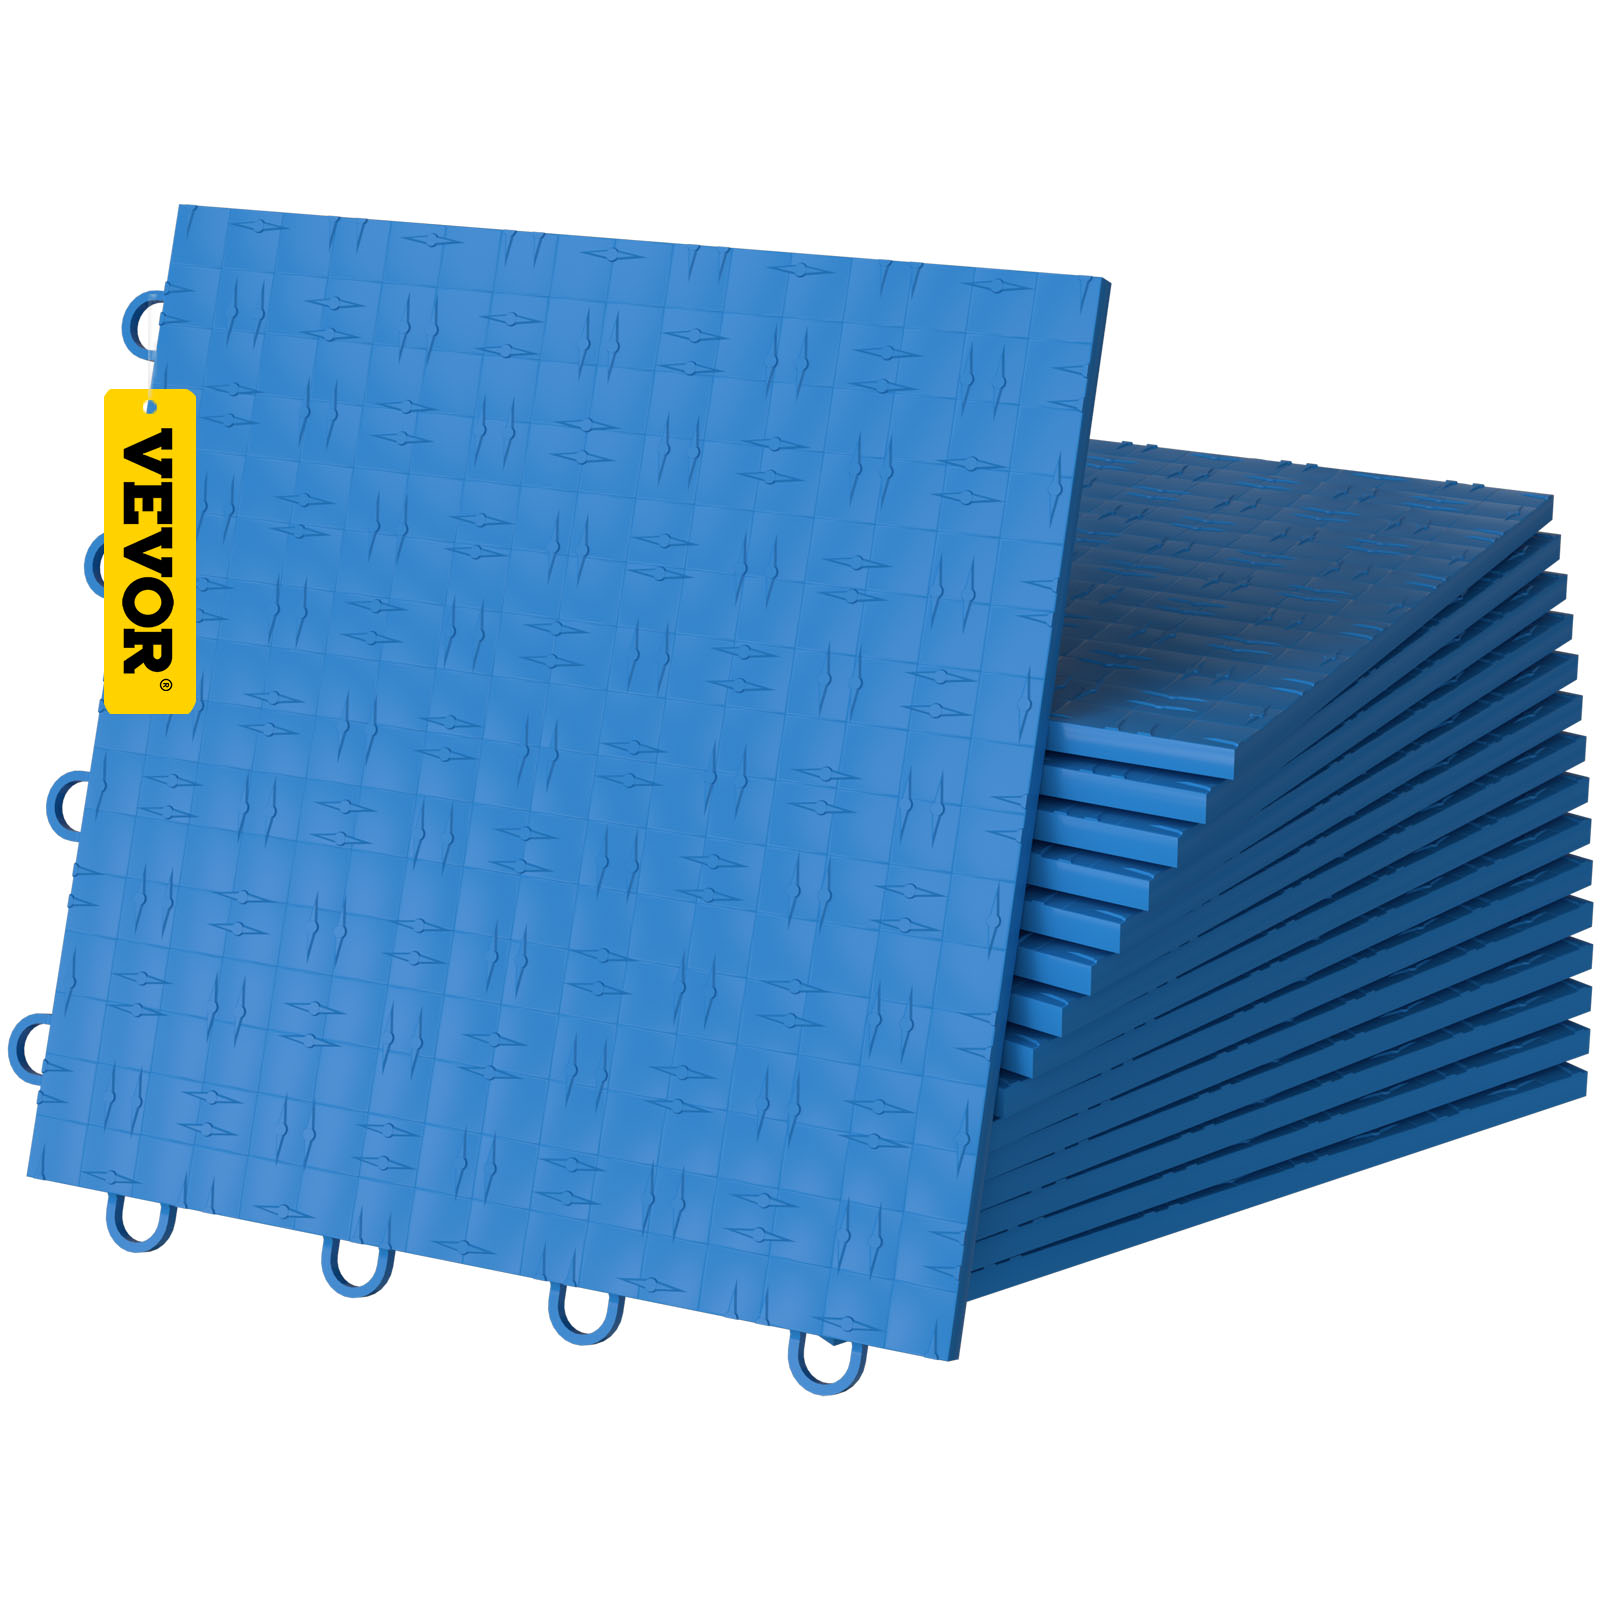 Vevor Garage Tiles Interlocking Garage Floor Covering Tiles 12x12" 25 Pack Blue от Vevor Many GEOs